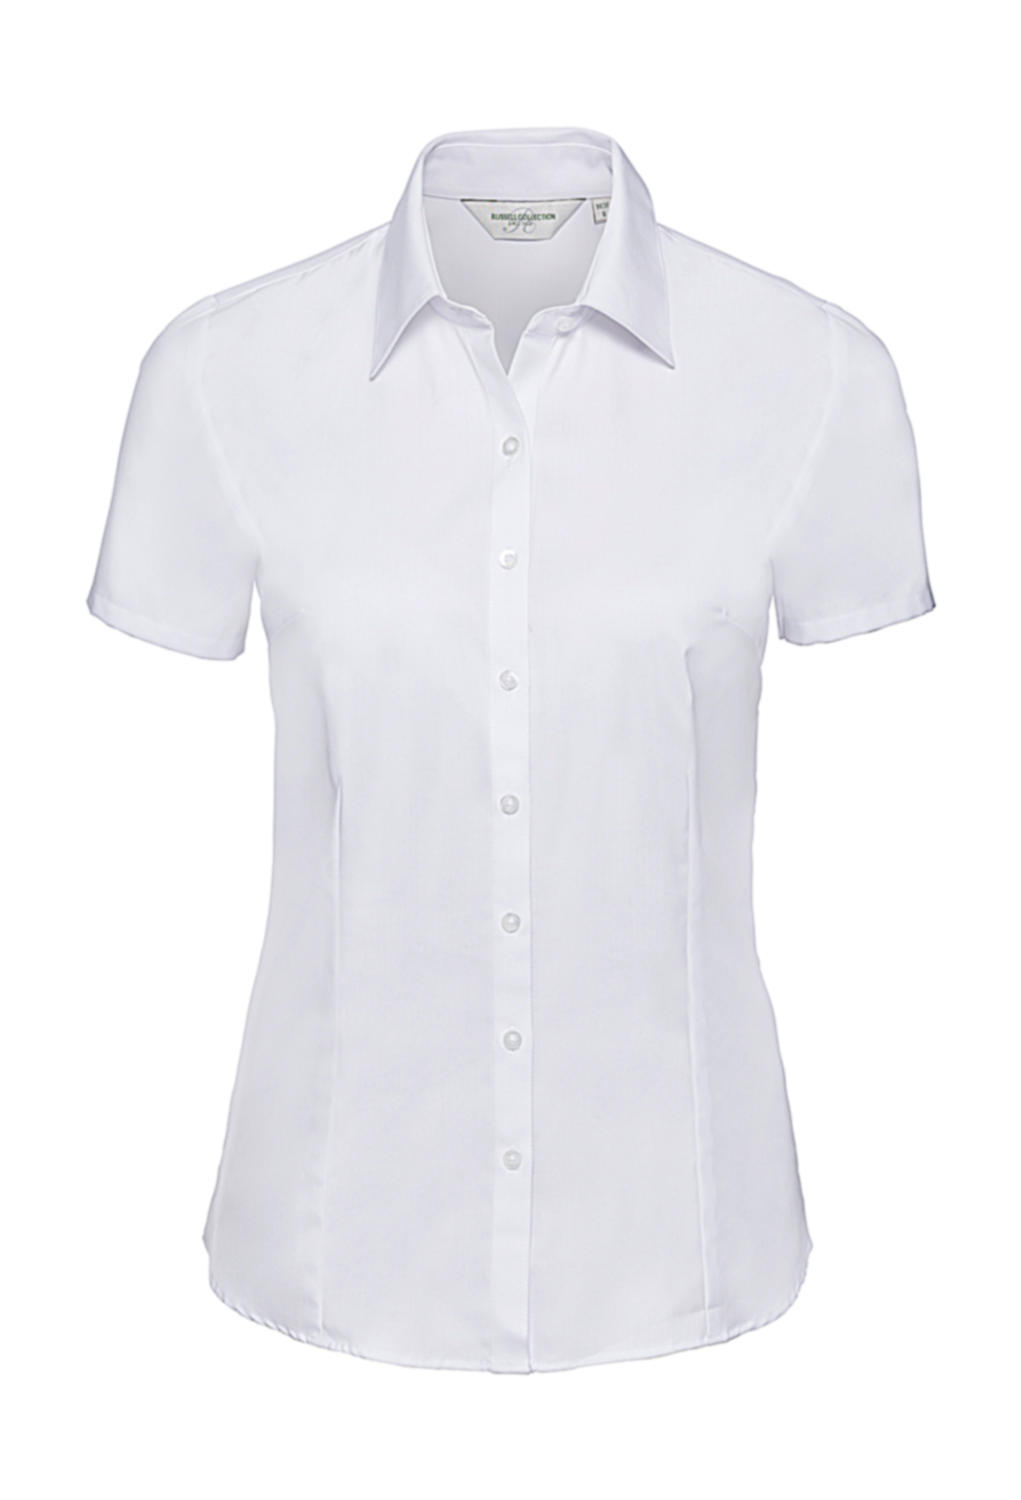  Ladies Herringbone Shirt in Farbe White